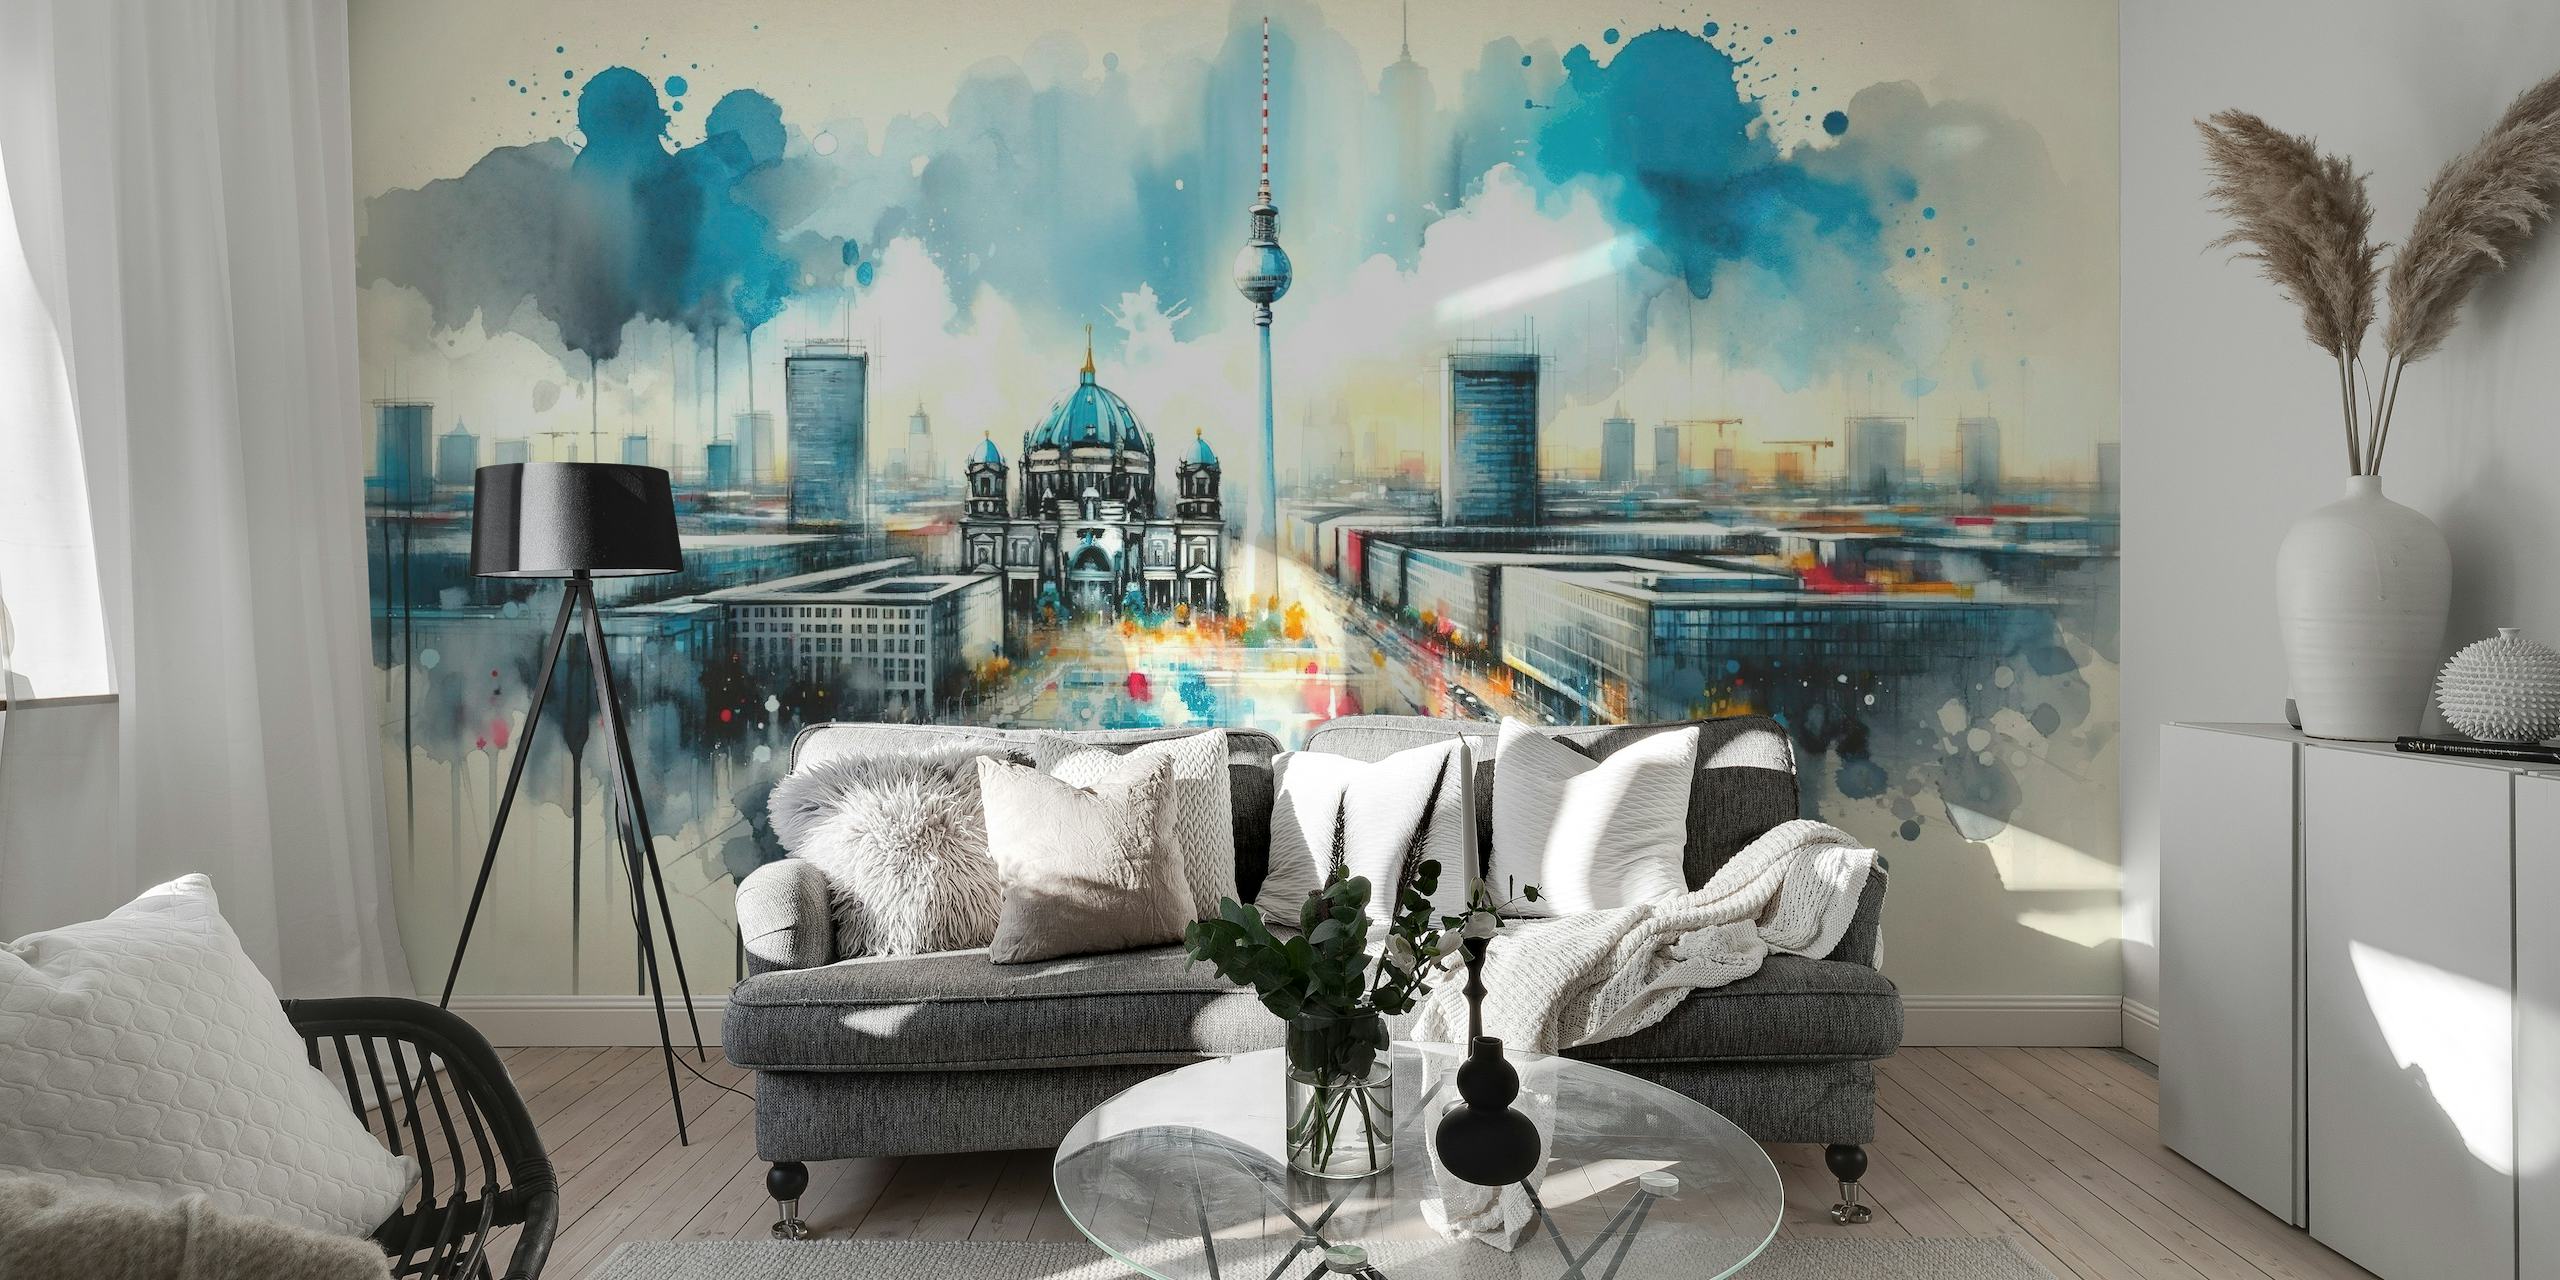 Mural u akvarelu moderne arhitekture Berlina s kultnim znamenitostima i dinamičnom, umjetničkom interpretacijom.